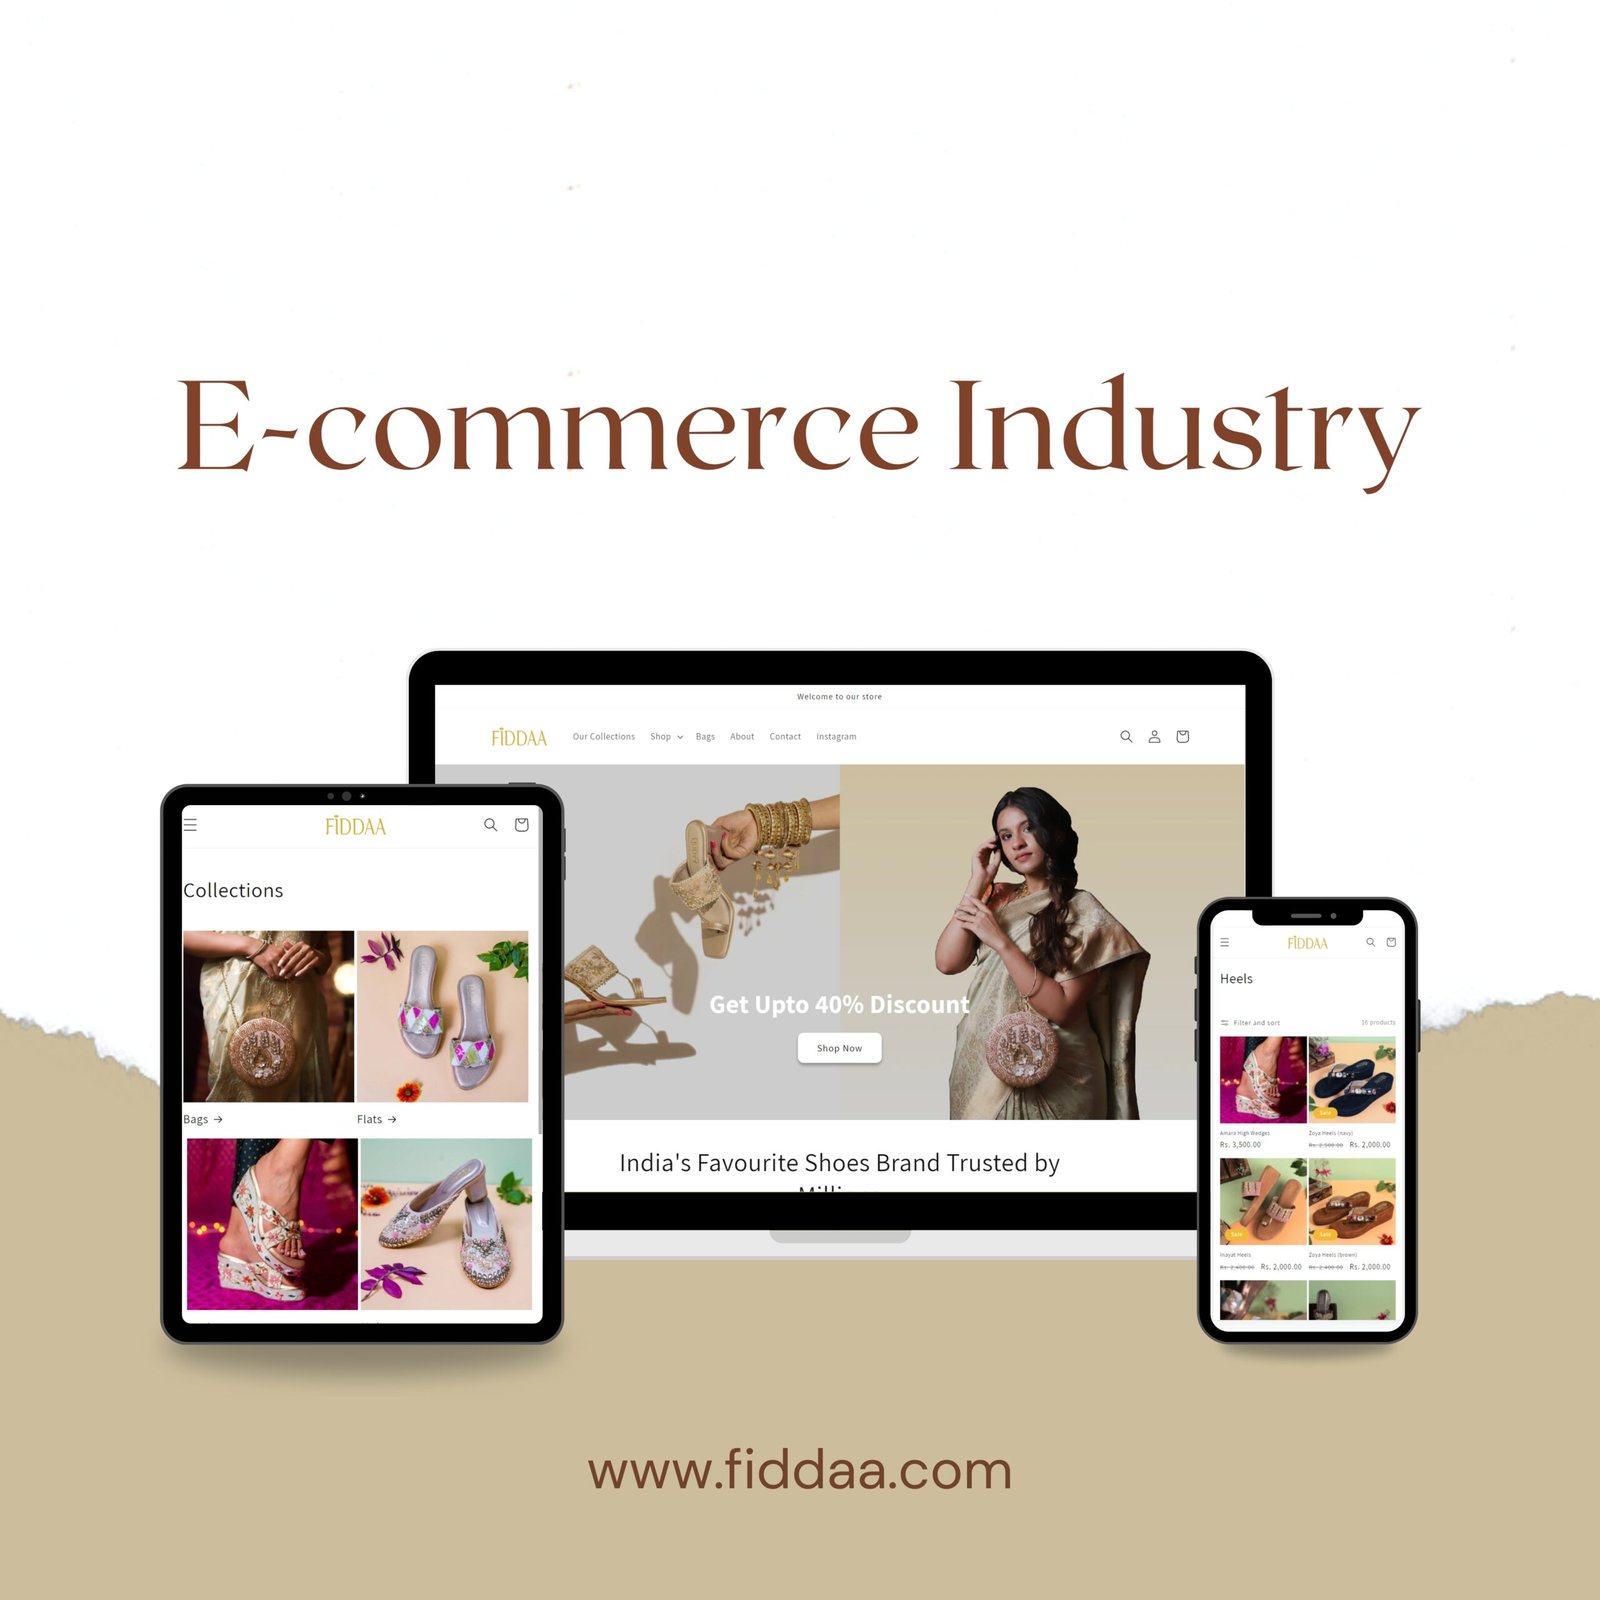 Fiddaa.com